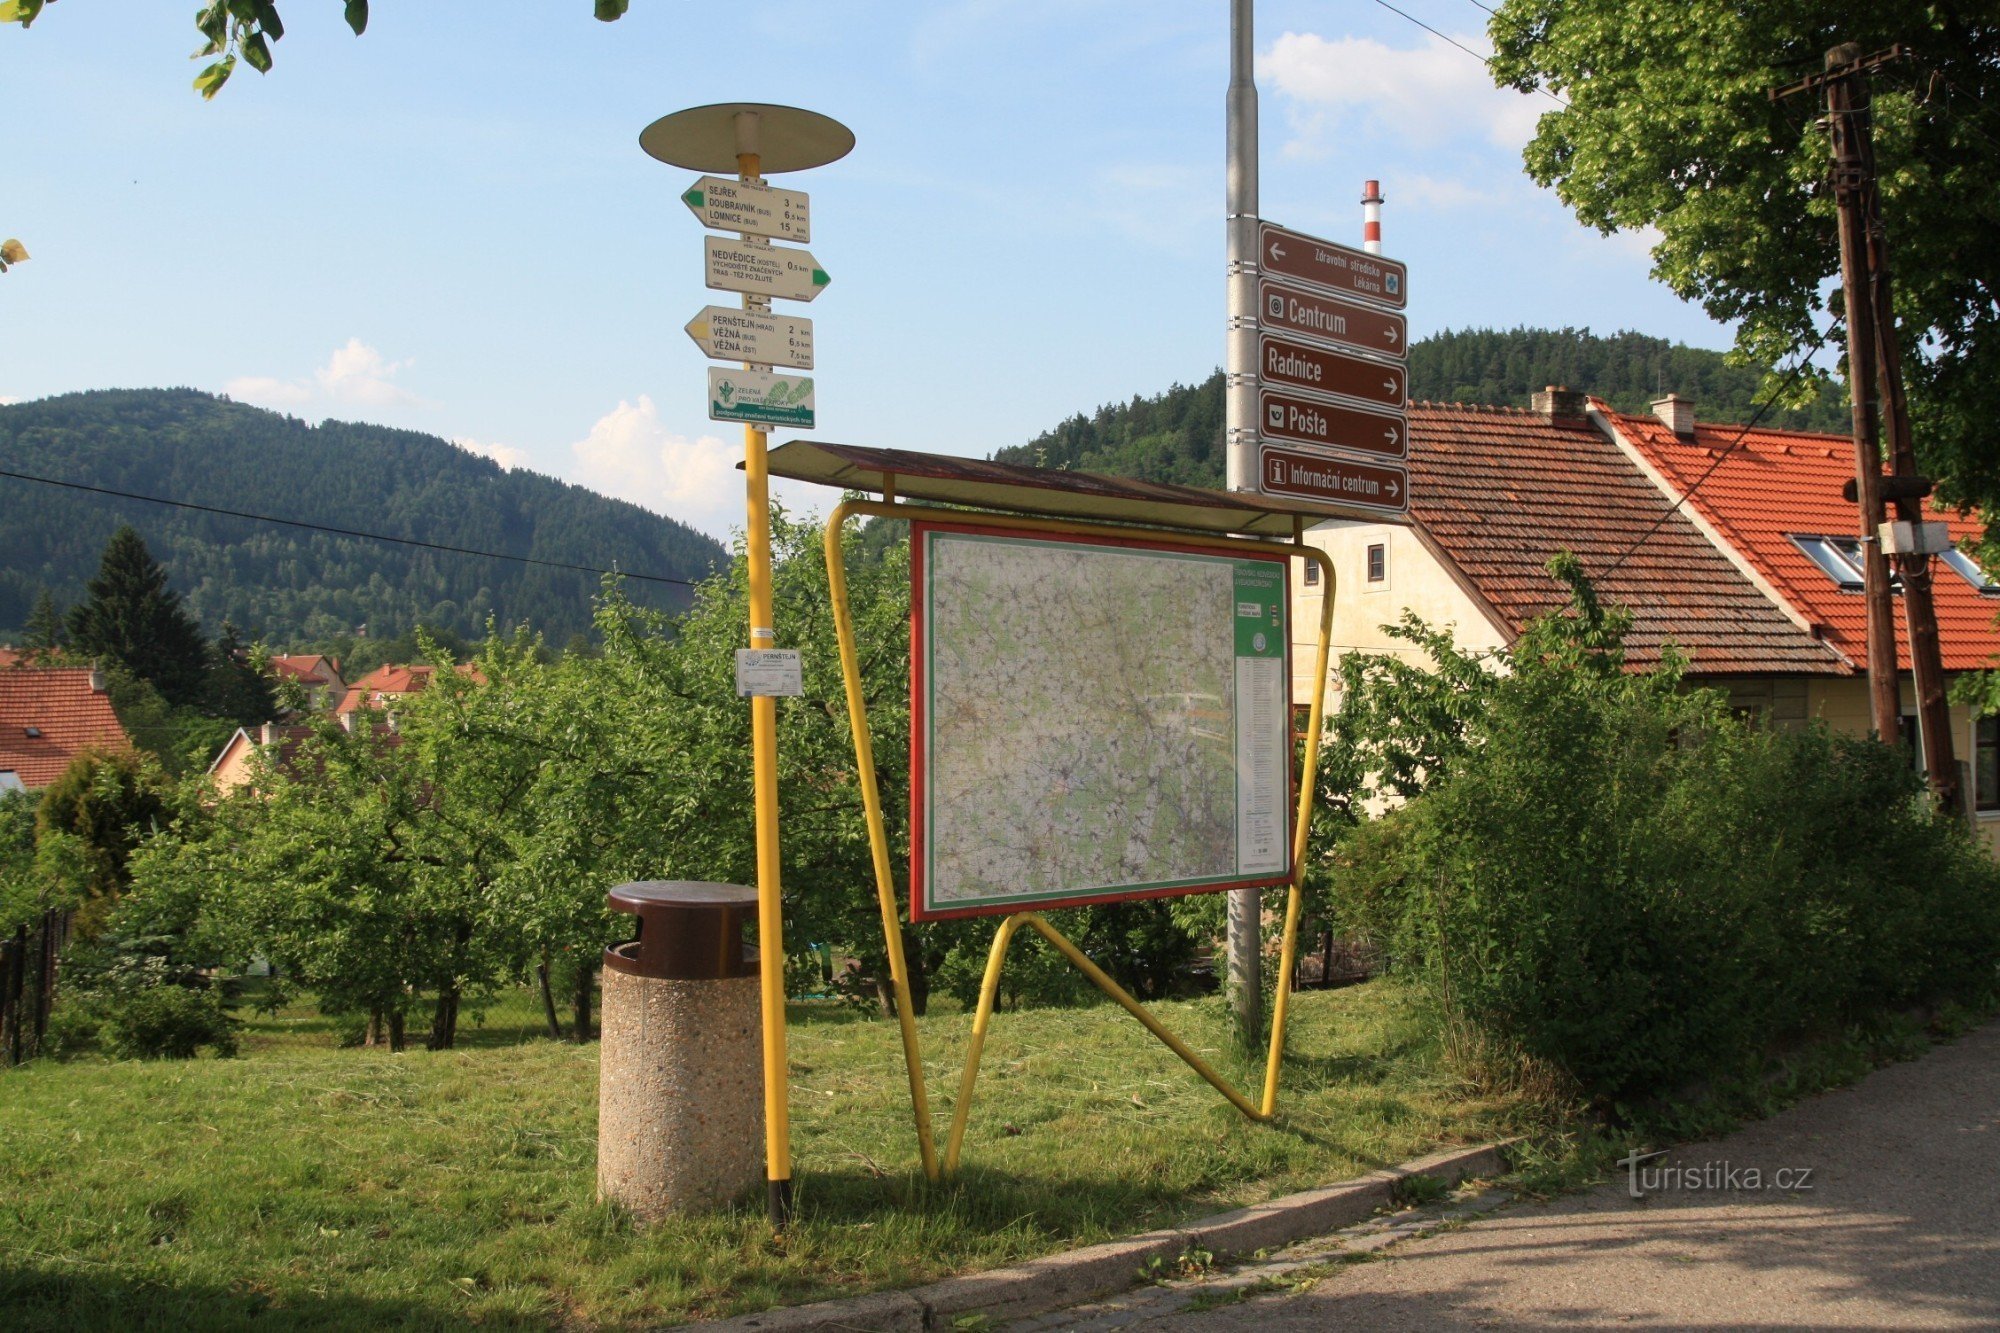 Nedvědice - răscruce turistică lângă gară